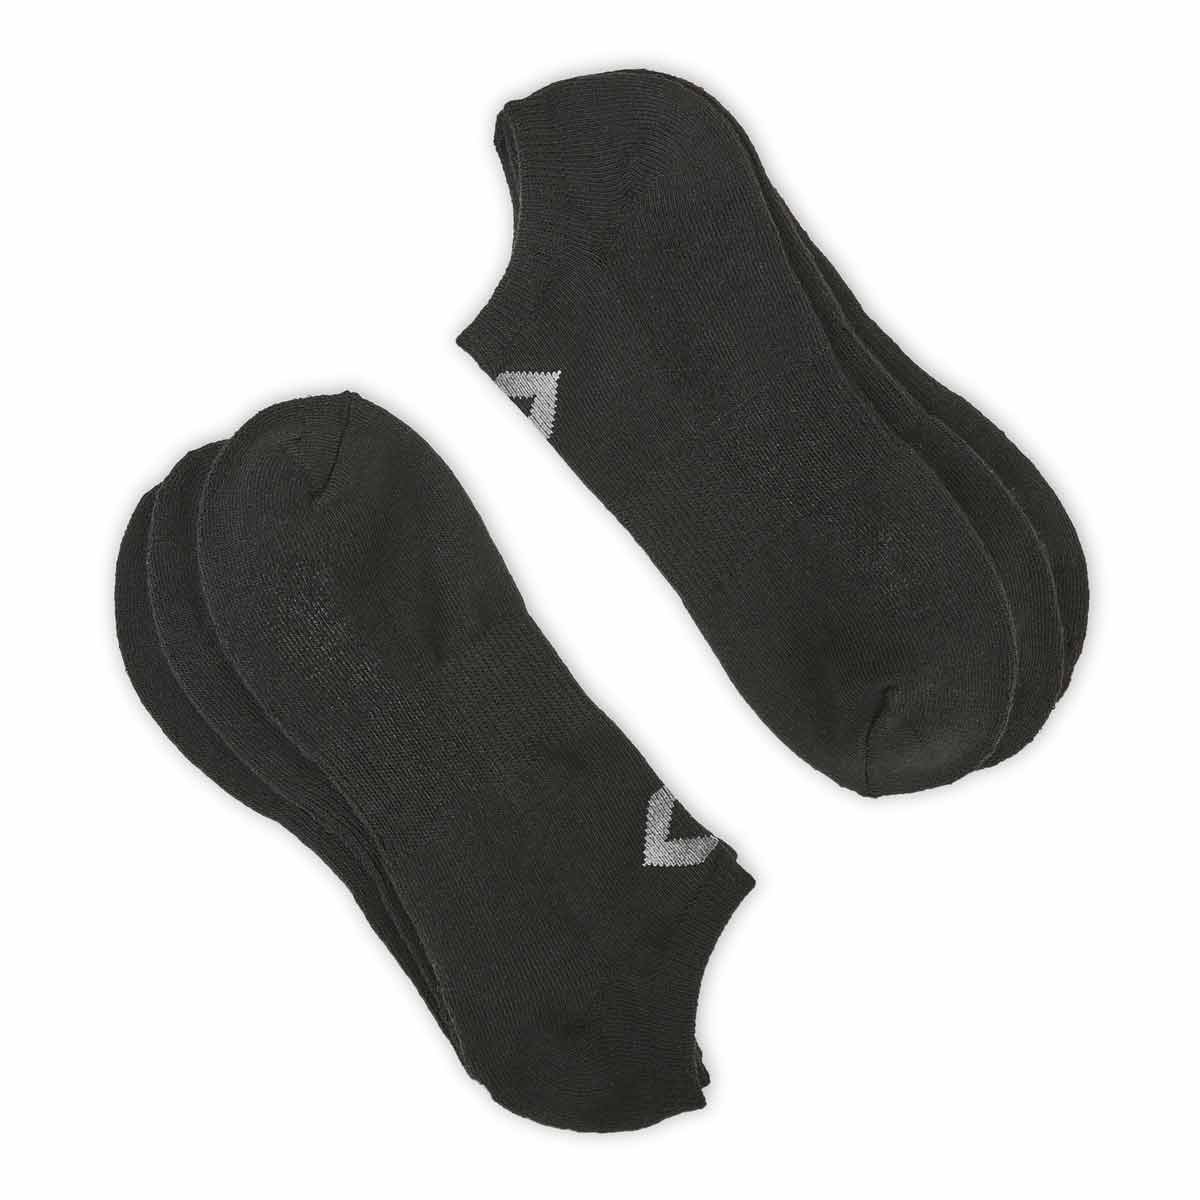 Men's CONVERSE black/grey no show socks - 3 pack